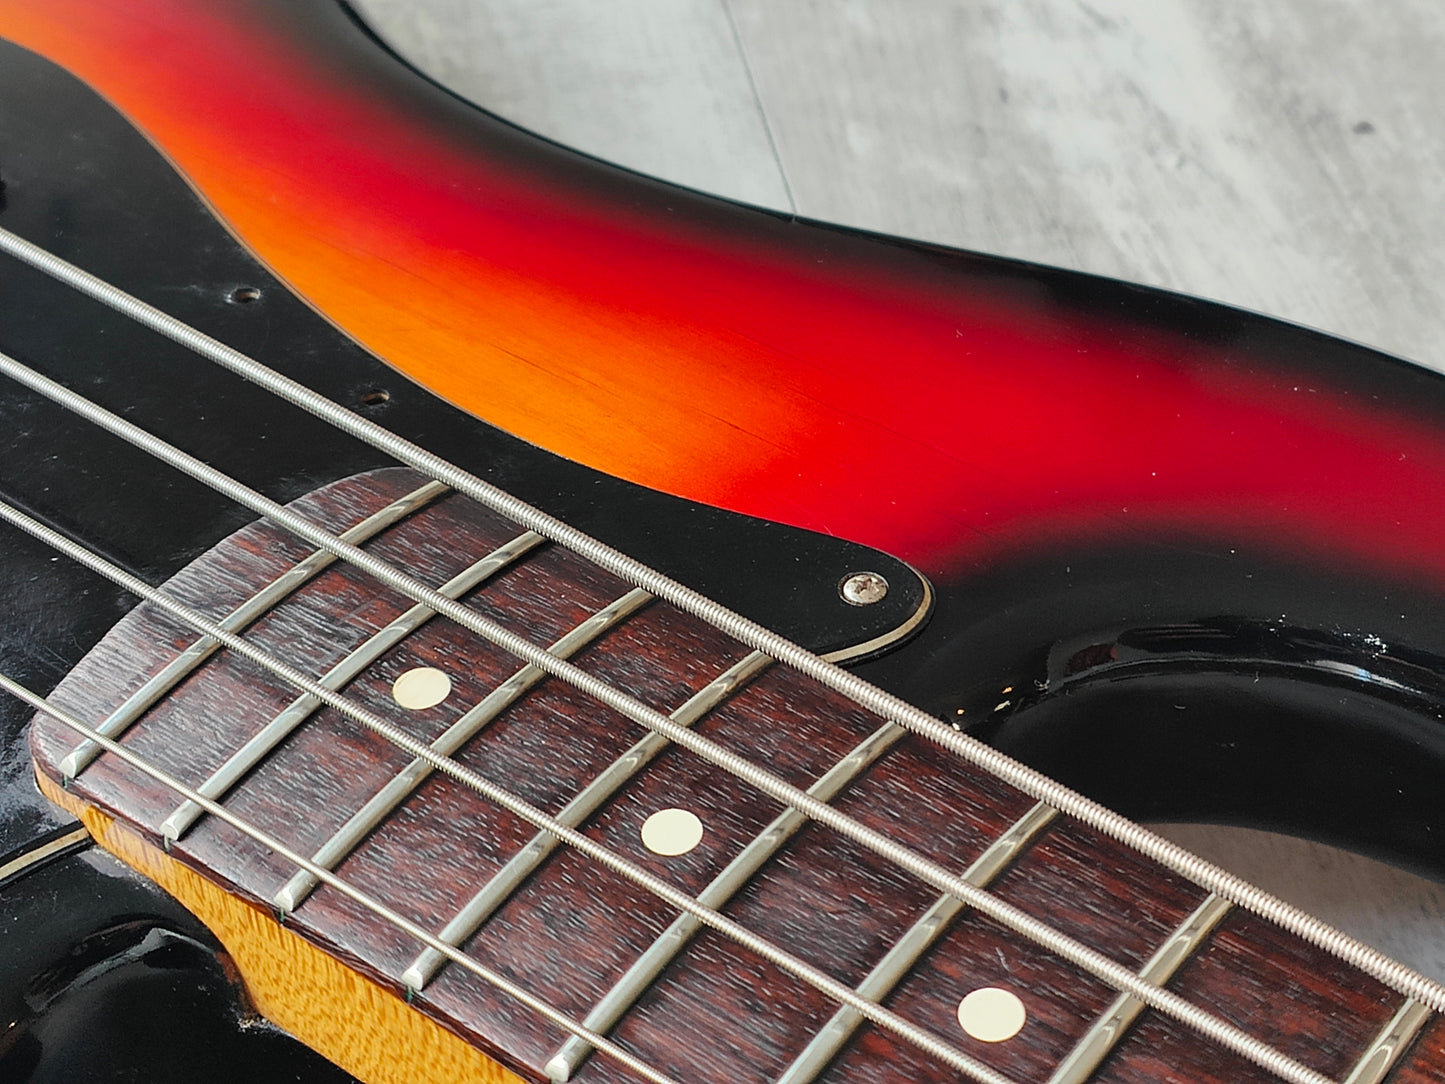 1983 Fender USA Elite I Precision Bass w/EMG's (Sunburst)